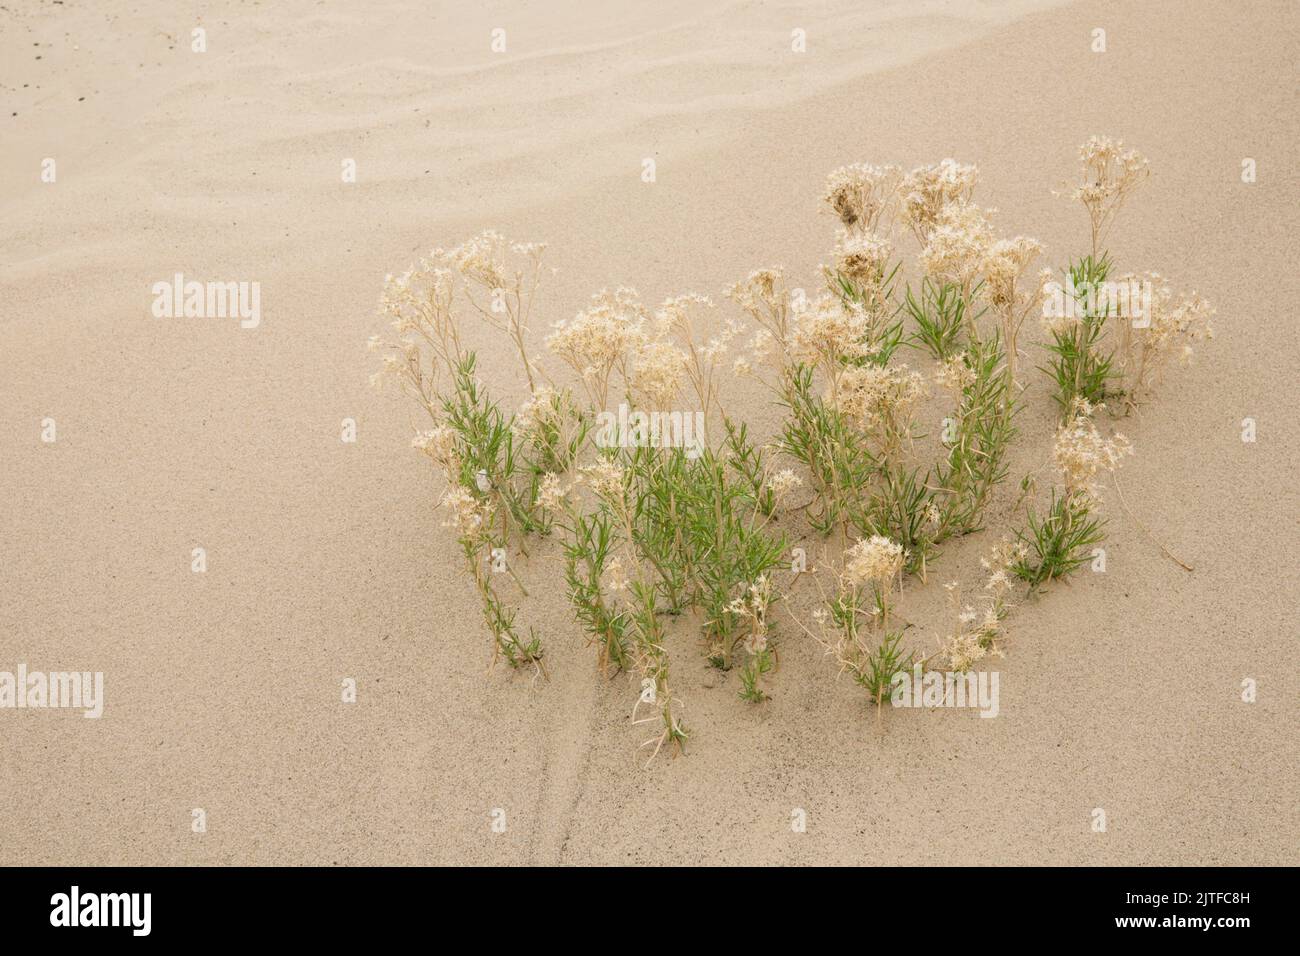 Window Rock, Arizona, EE.UU. Planta tolerante a la sequía sobrevive en la arena. Foto de stock